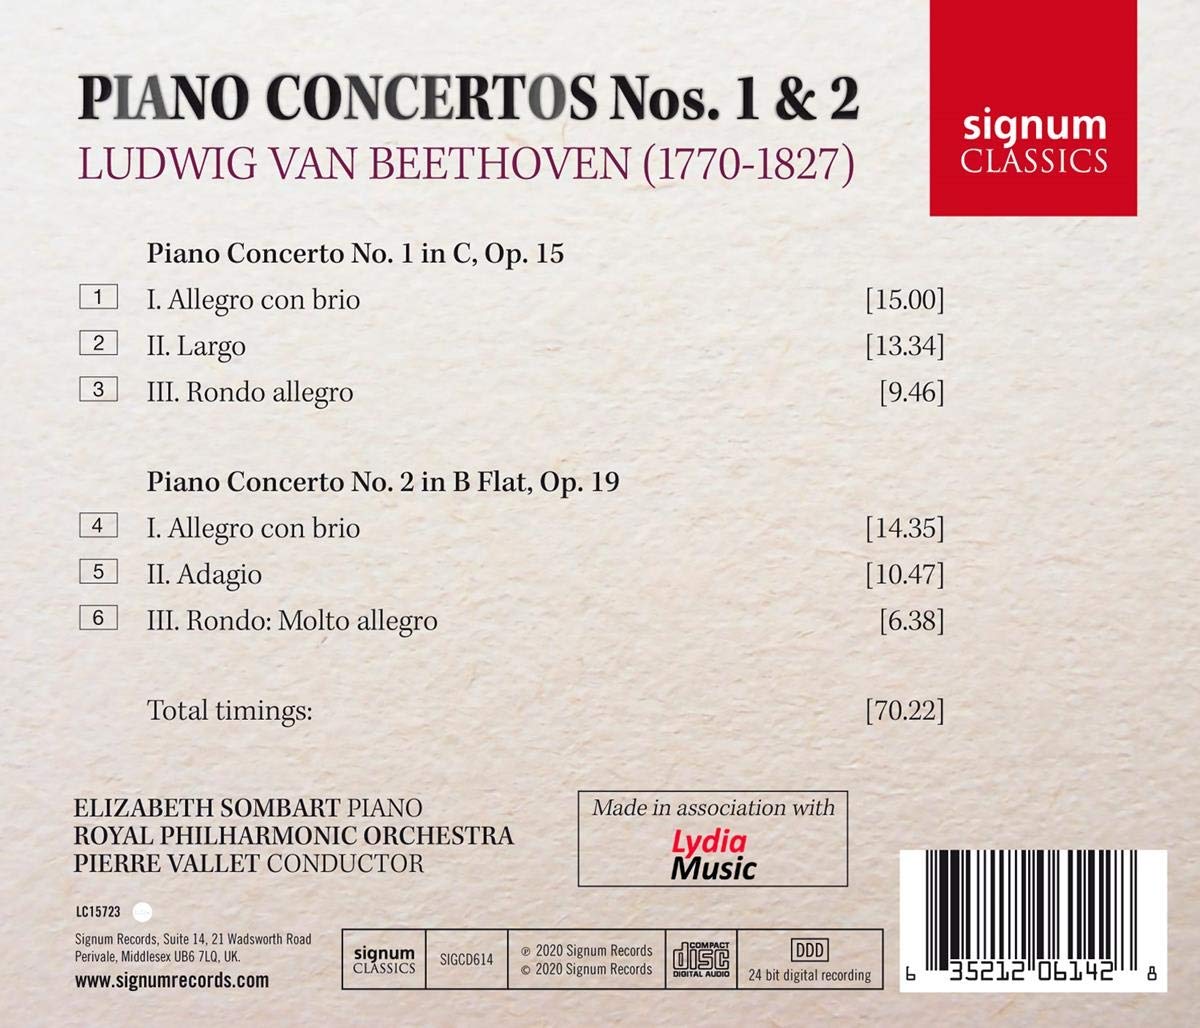 Elizabeth Sombart 베토벤: 피아노 협주곡 1, 2번 (Beethoven: Piano Concertos Nos. 1 & 2)